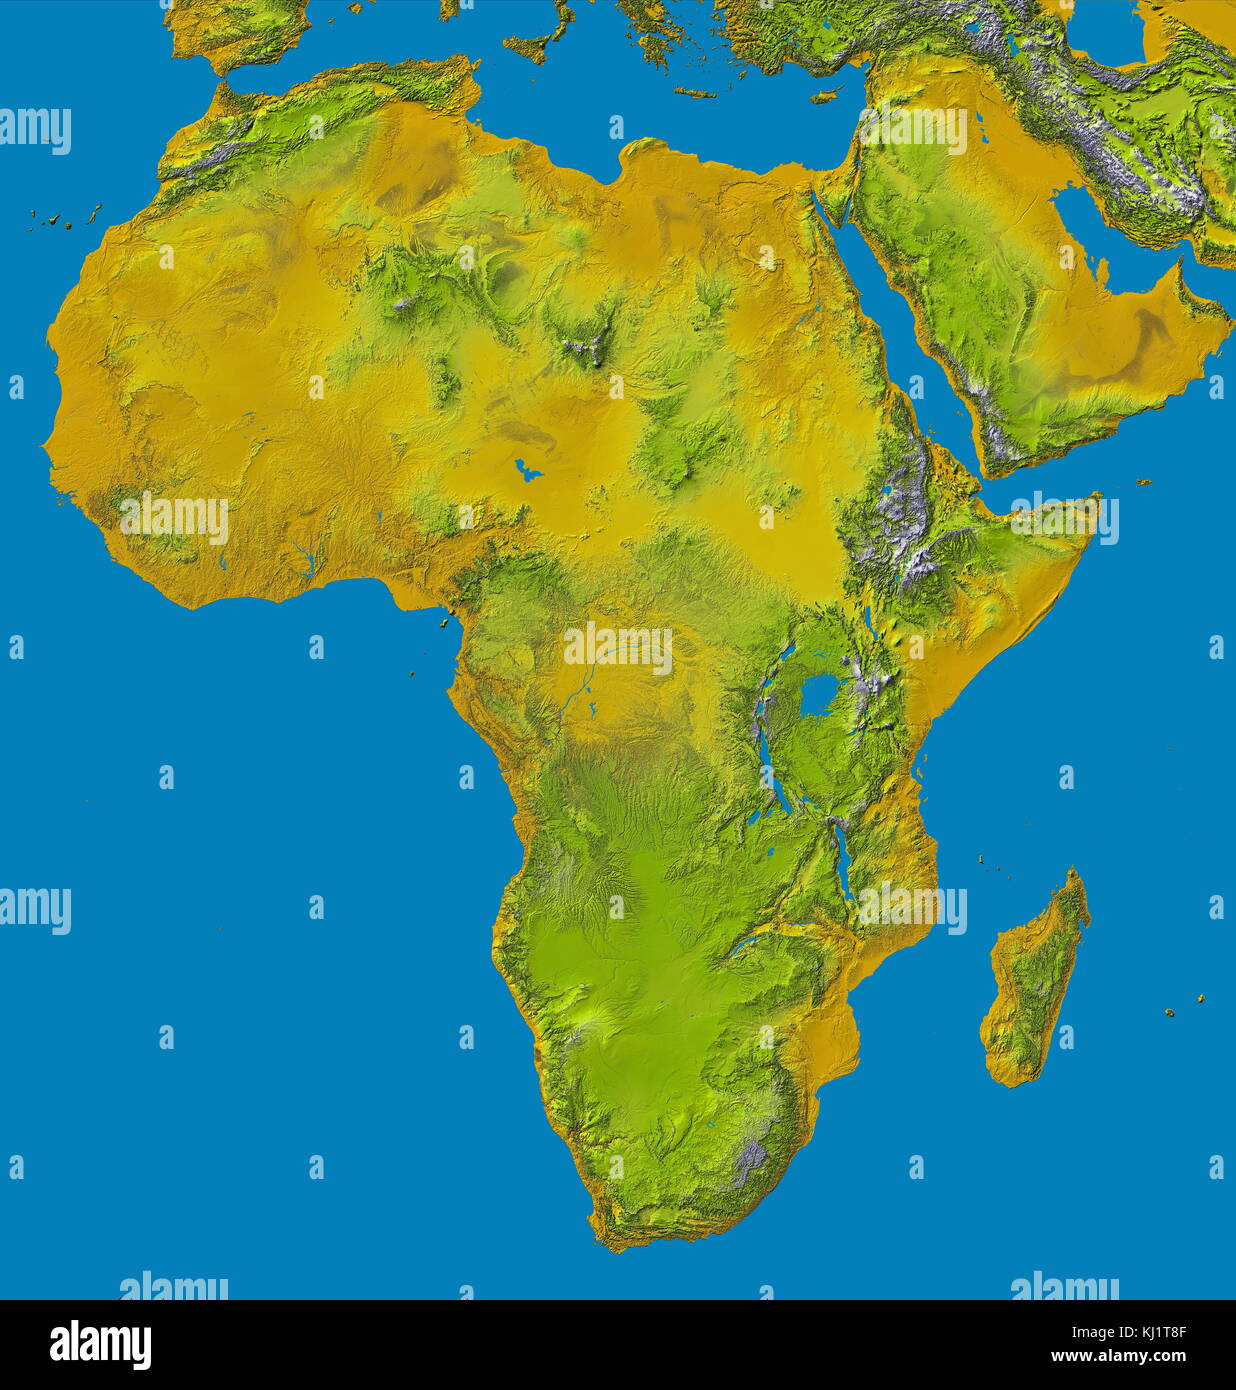 Immagine in rilievo di Africa dallo Shuttle Radar Topography Mission (SRTM). Questa release nel 2000, include i dati per tutto il continente, più l'isola del Madagascar e la penisola arabica. La centrale di latitudini dell Africa è dominata dal Grande Rift Valley che si estende dal lago Nyasa al Mar Rosso. A ovest si trova il bacino del Congo. La maggior parte della parte meridionale del continente si appoggia su di un altopiano concavo comprendente il bacino del Kalahari. la codifica a colori è direttamente correlata alla altezza topografica, con marrone e giallo ad altitudini più basse, passando attraverso verdi, al bianco a quote più alte. B Foto Stock